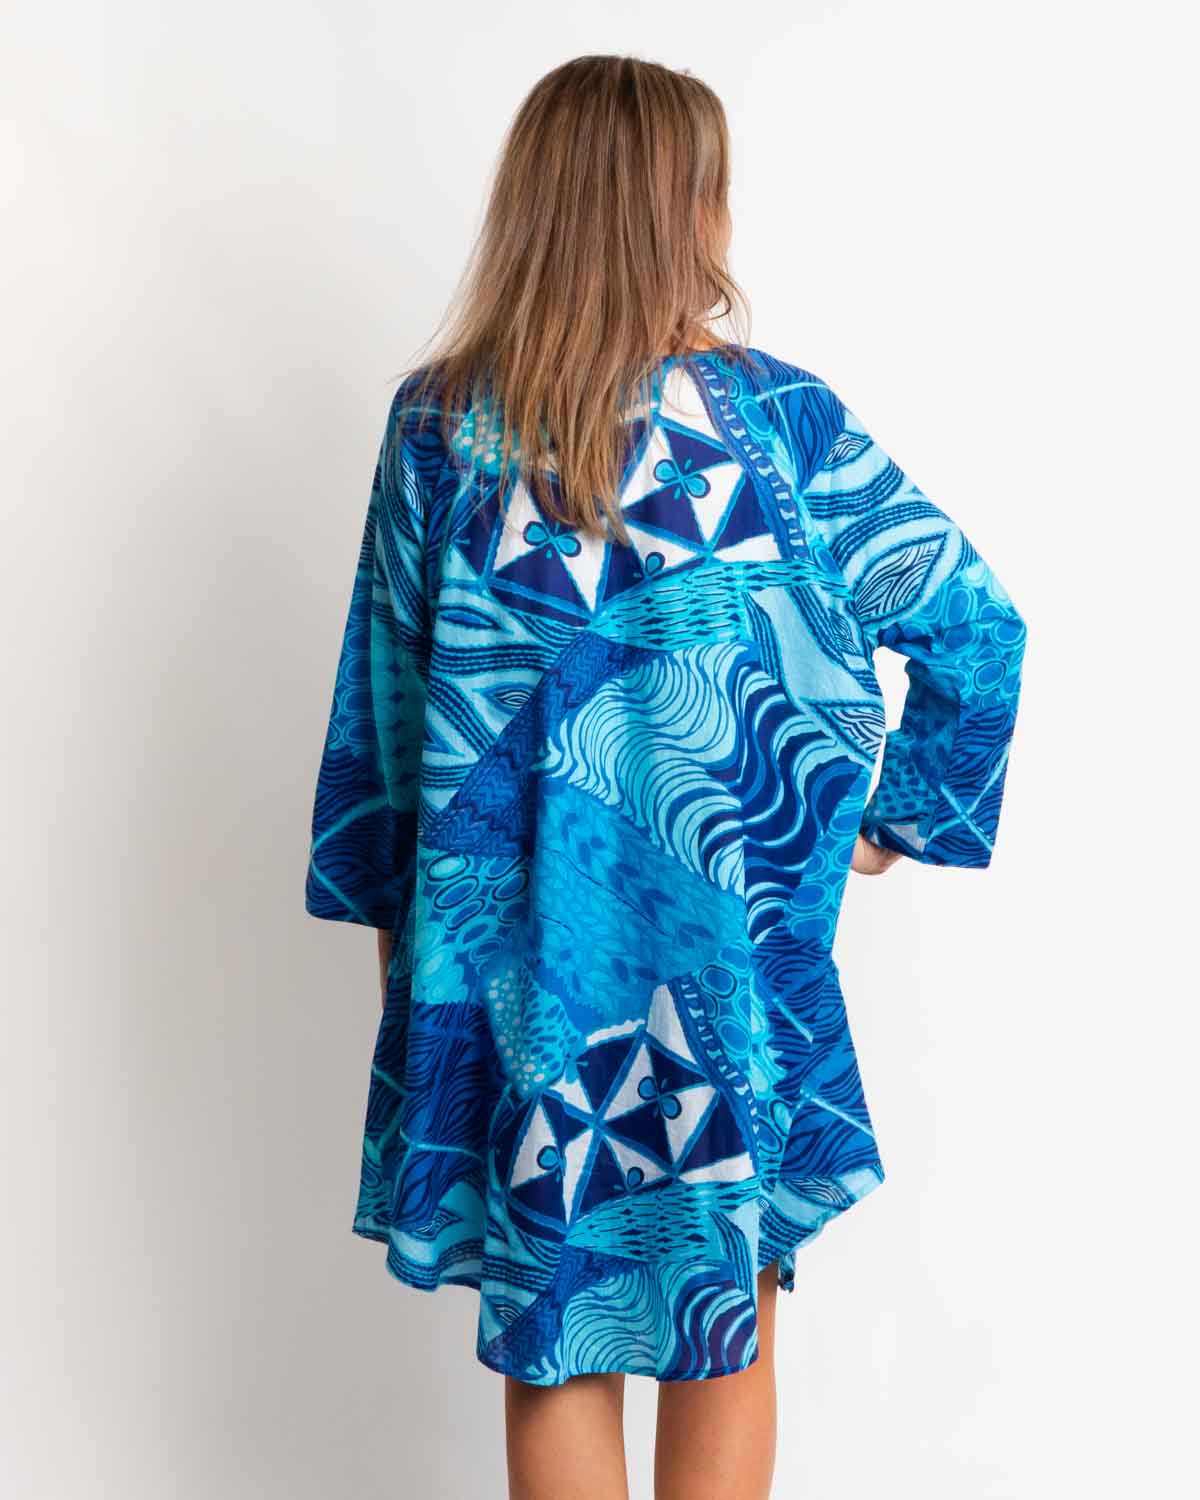 Free Size Proserpine Dress in Blue Festival Print